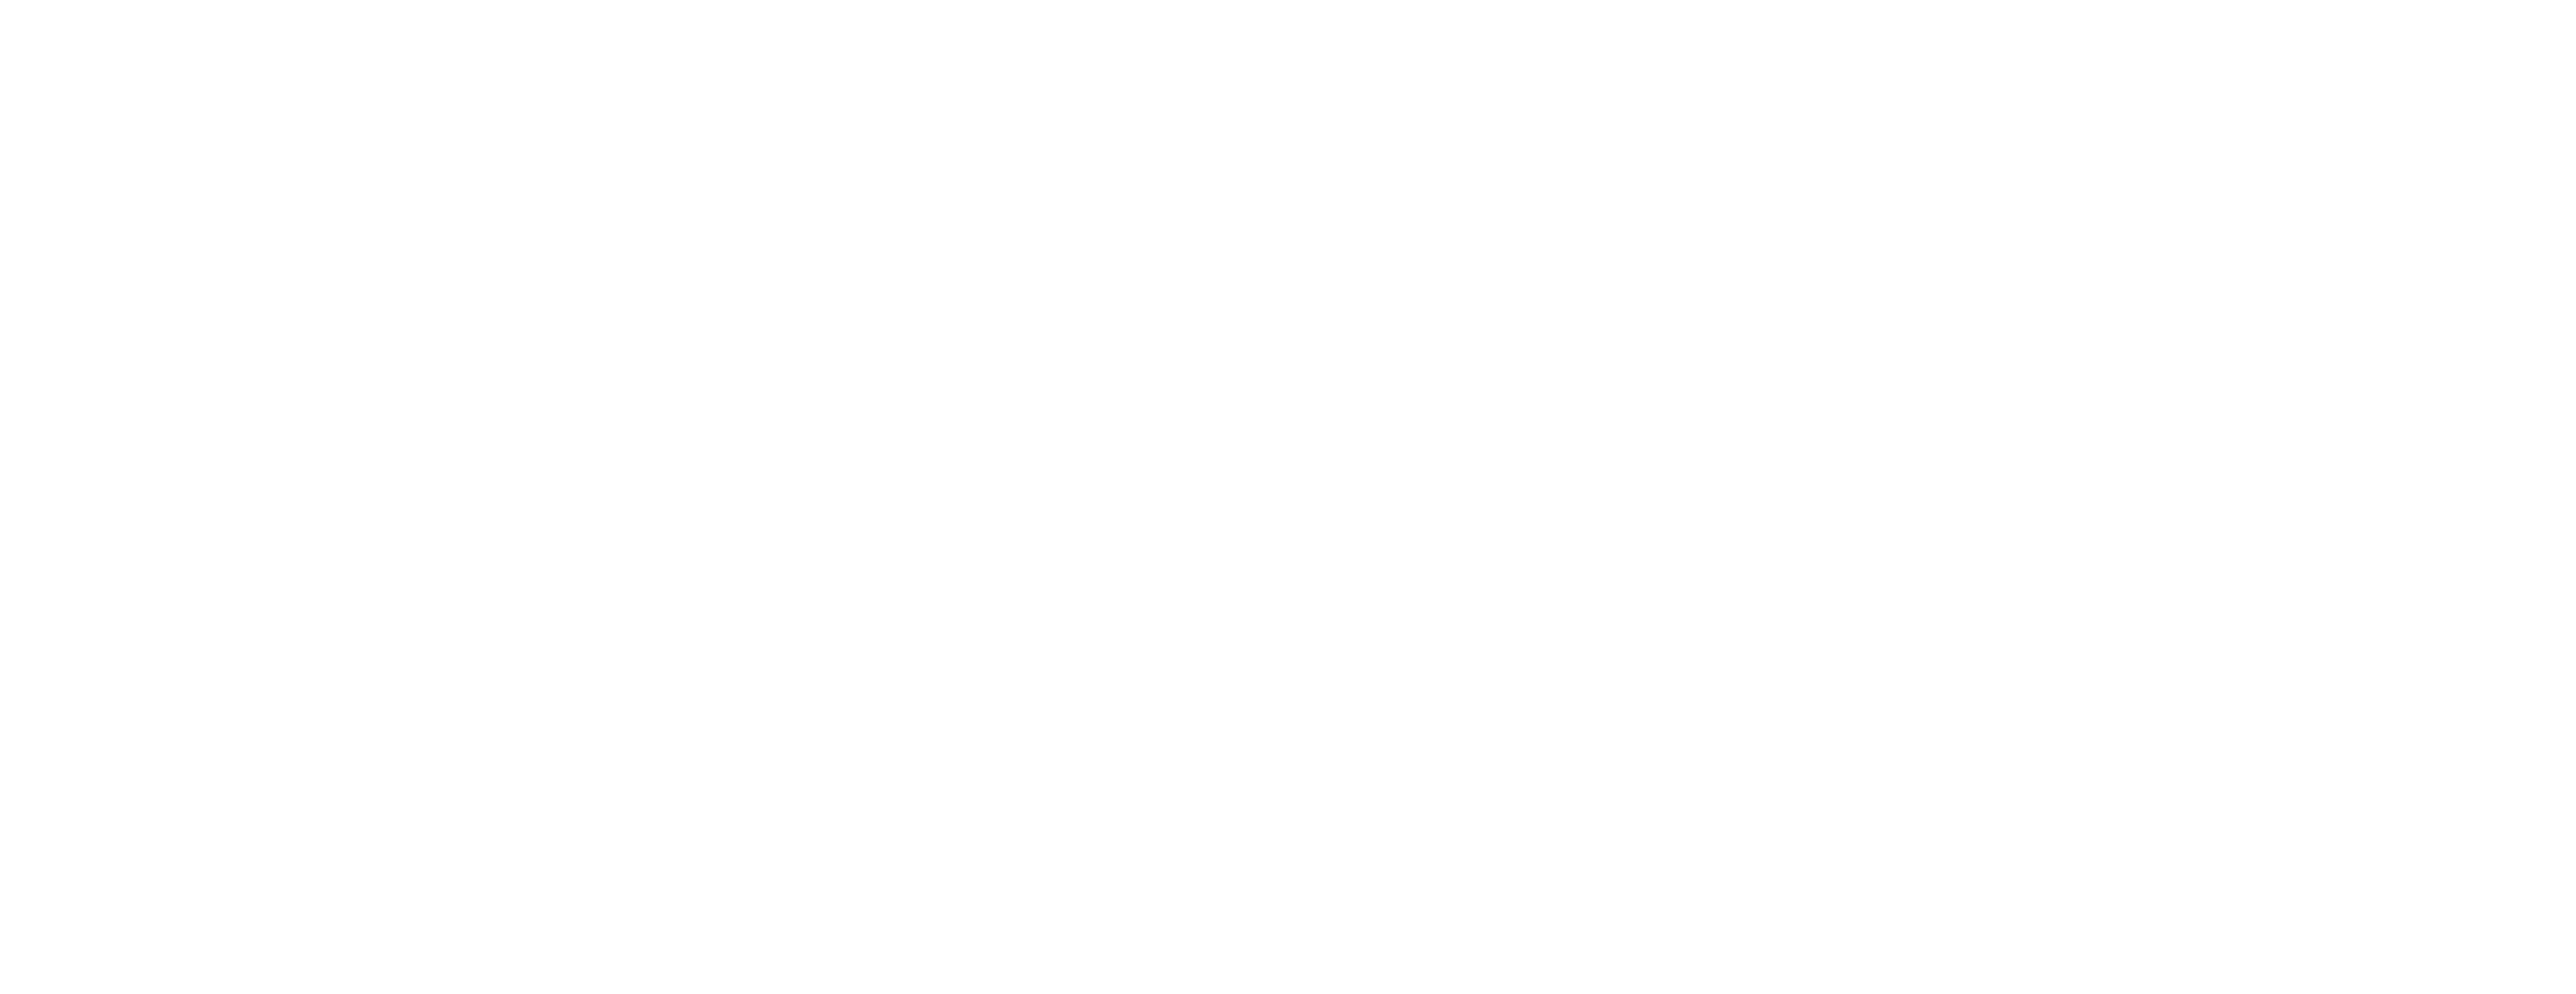 Manifest Audio